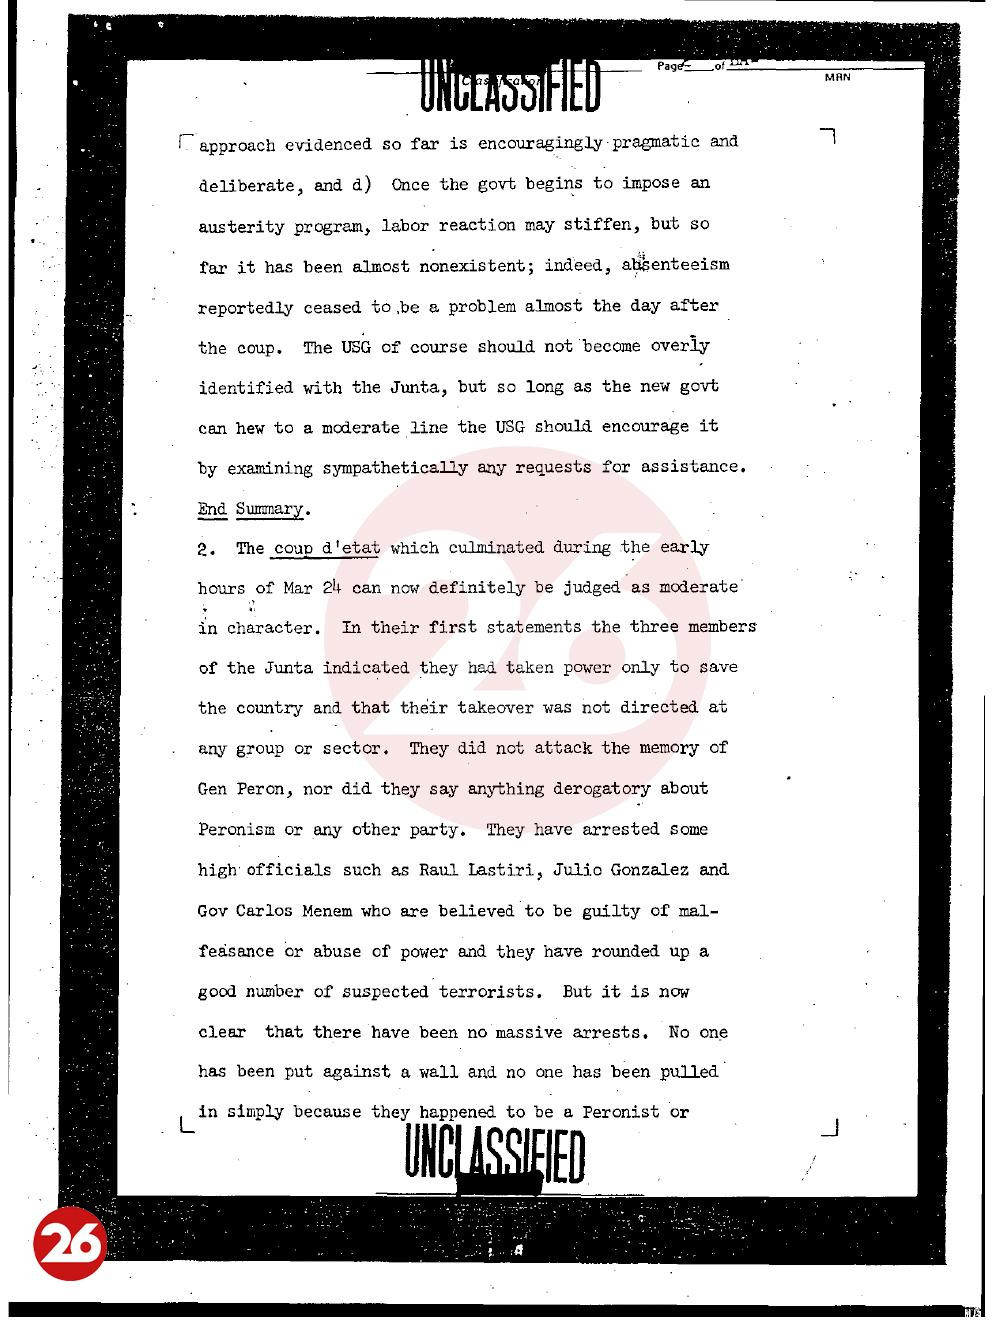 Documento desclasificado, Embajada de EE.UU. en Argentina, golpe militar de 1976